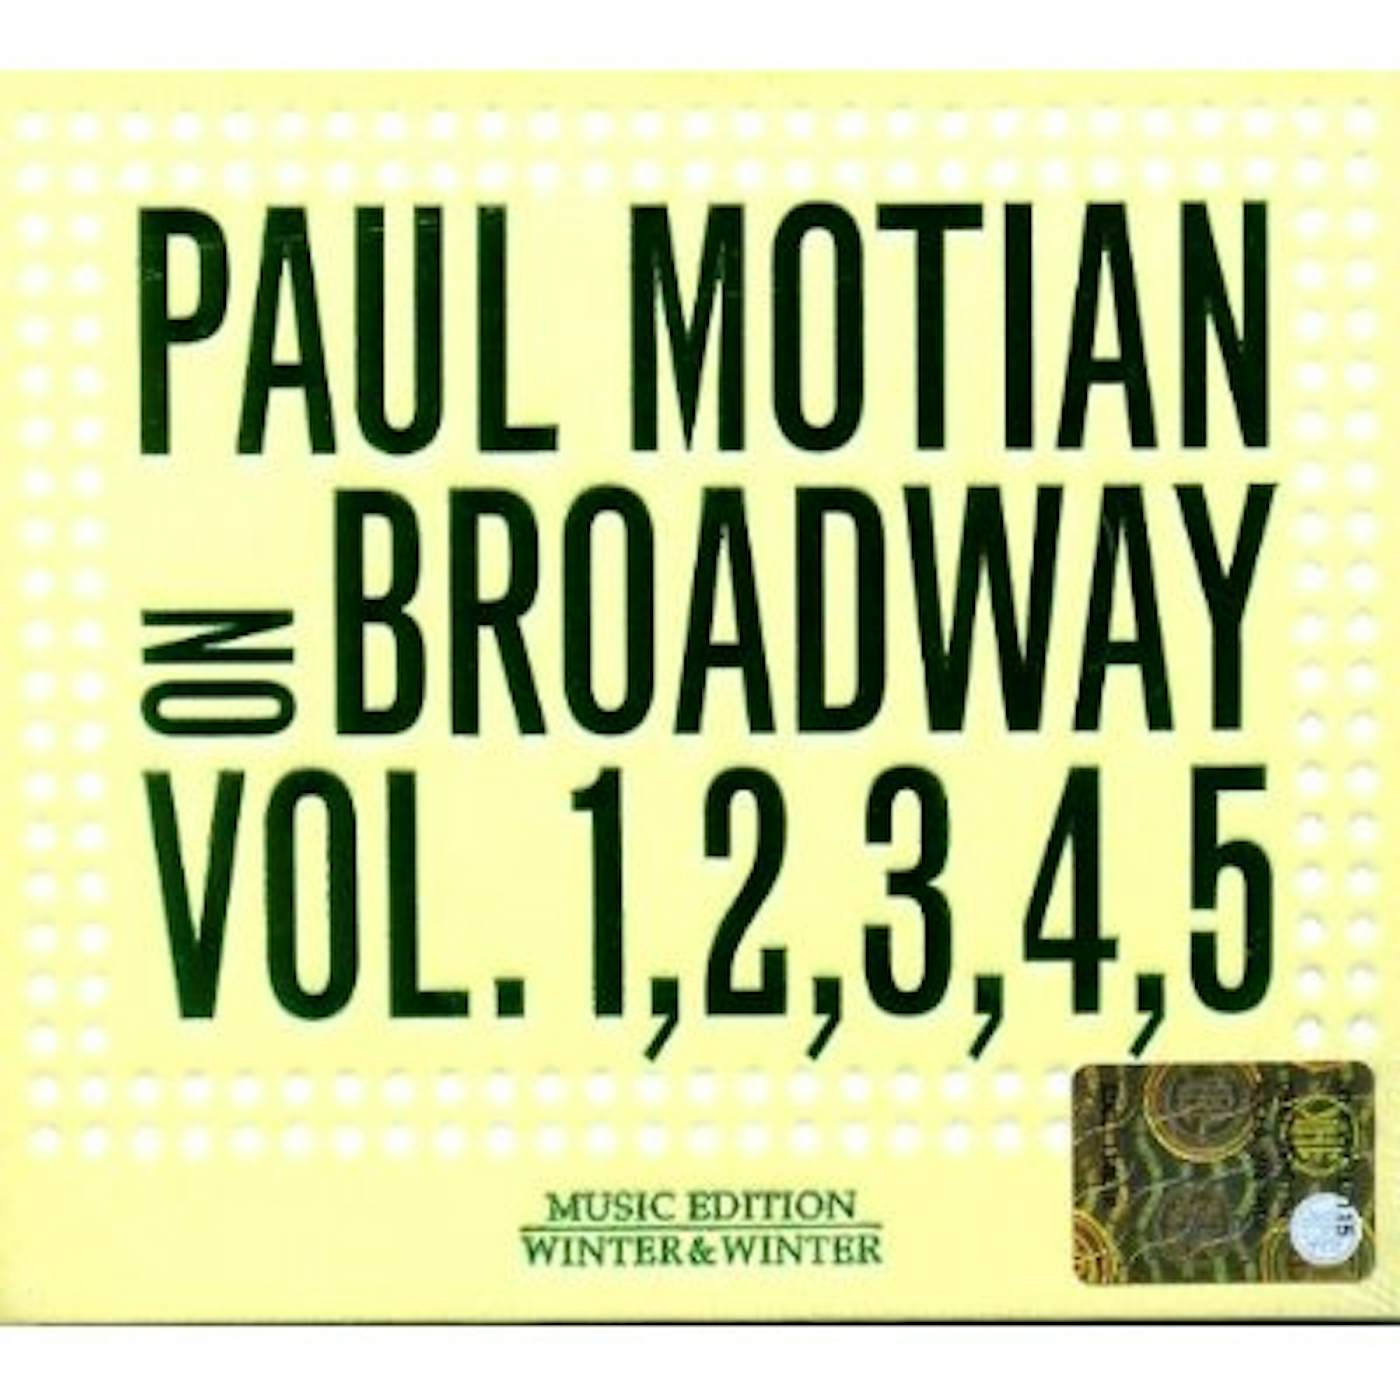 Paul Motian ON BROADWAY 1 & 2 & 3 & 4 & 5 CD